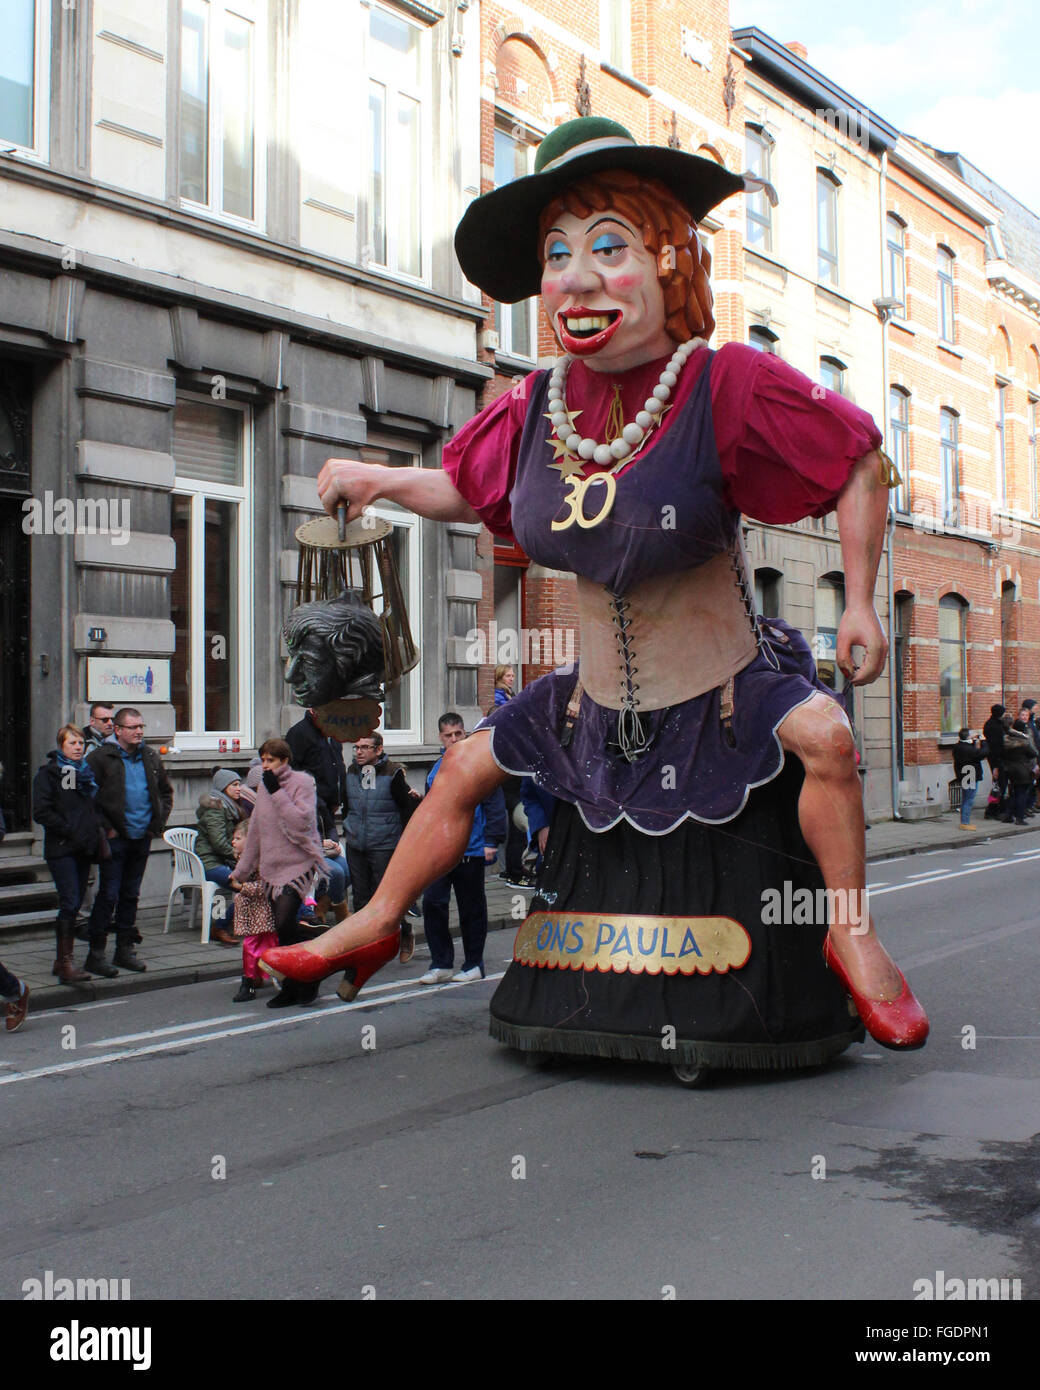 AALST, Belgio, 7 febbraio 2016: gigante e 'Voil Jeanet' 'Ons Paula". Un partecipante annuali durante la sfilata di carnevale a Aalst. Foto Stock